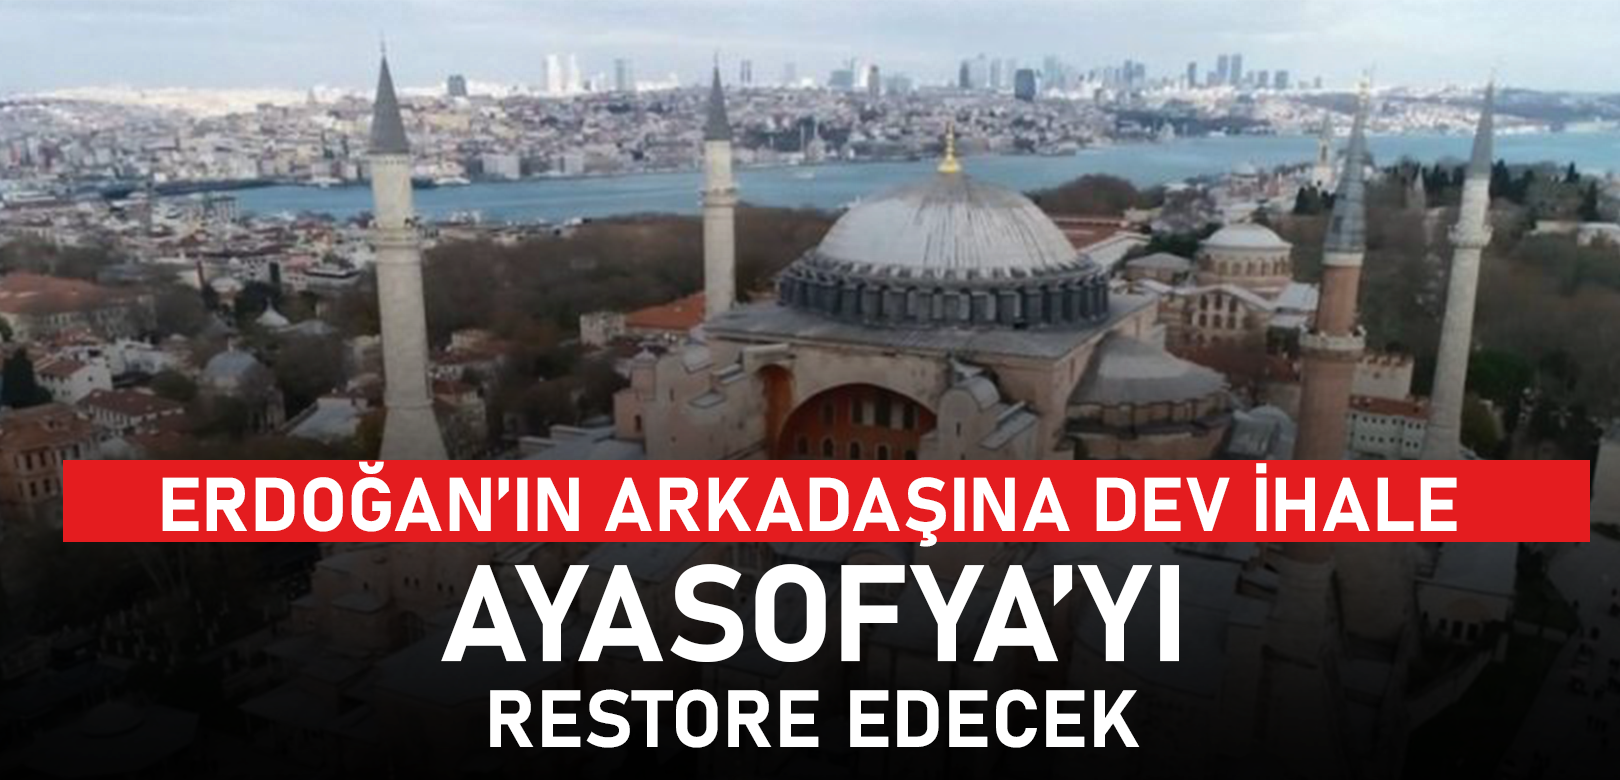 Ayasofya'nın restorasyon ihalesi Erdoğan'ın arkadaşına verildi